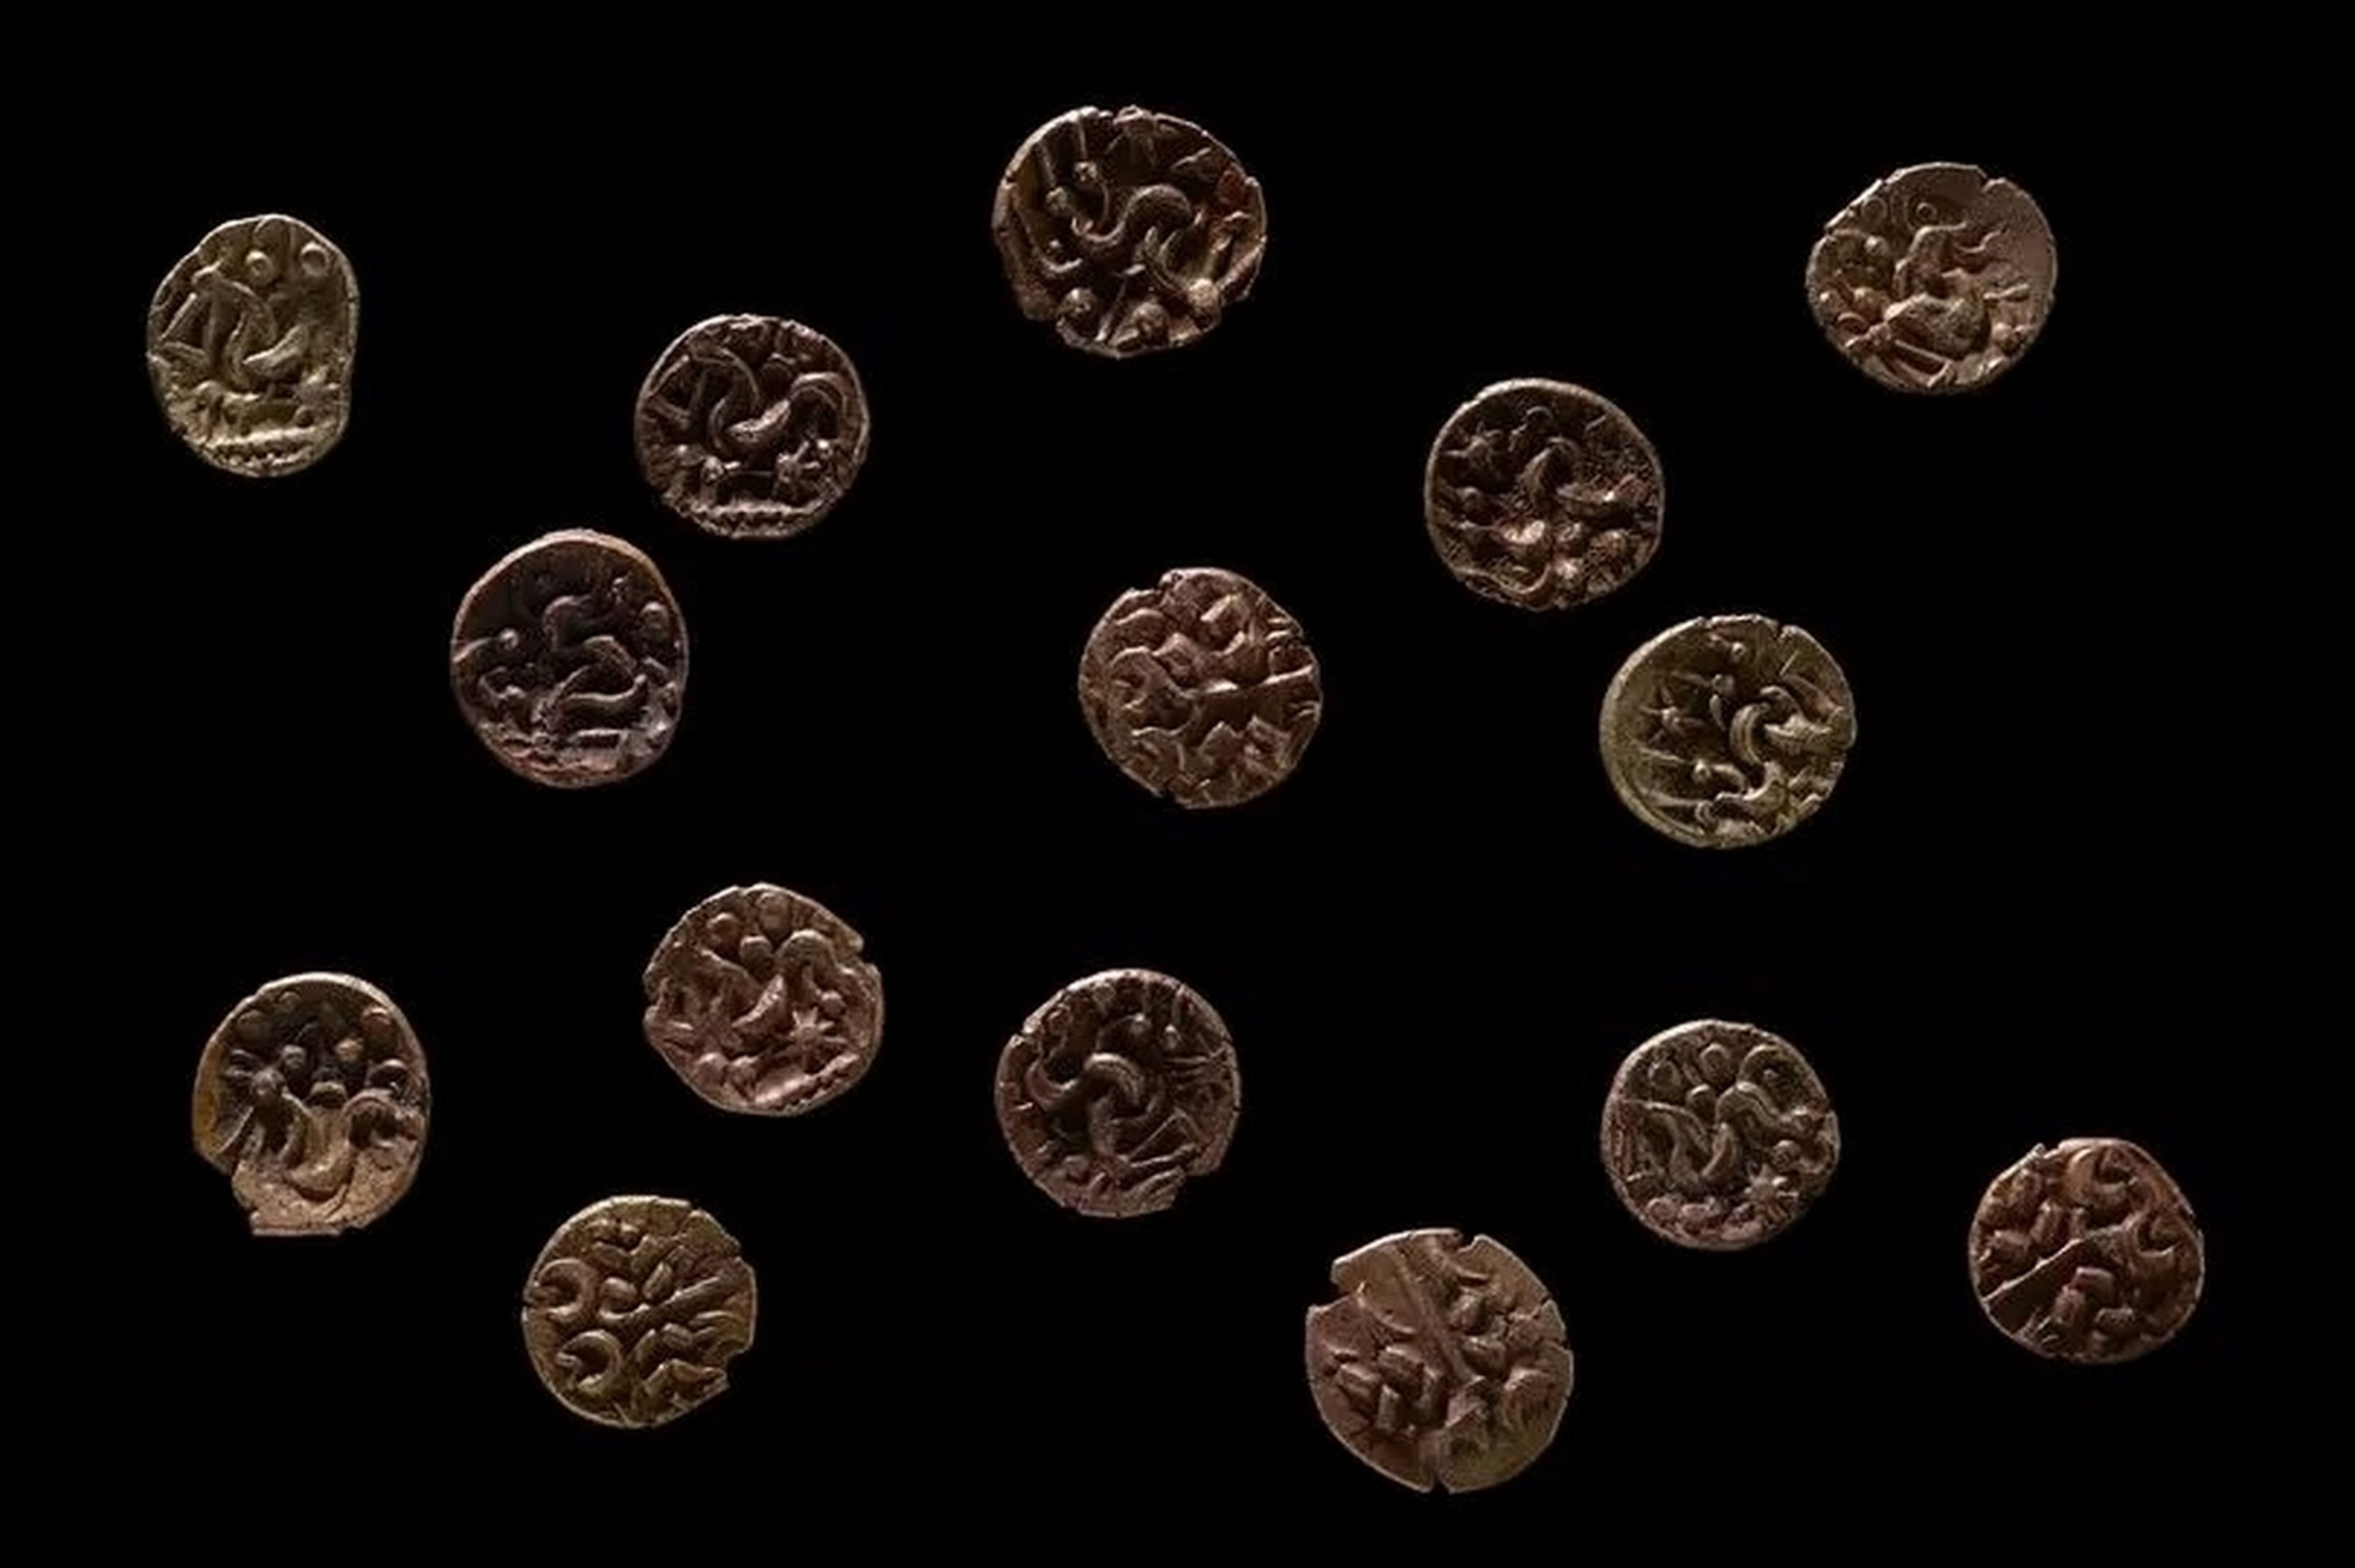 Se compra un detector de metales y descubre 15 monedas de oro de hace 2.000 años, nunca vistas en el país